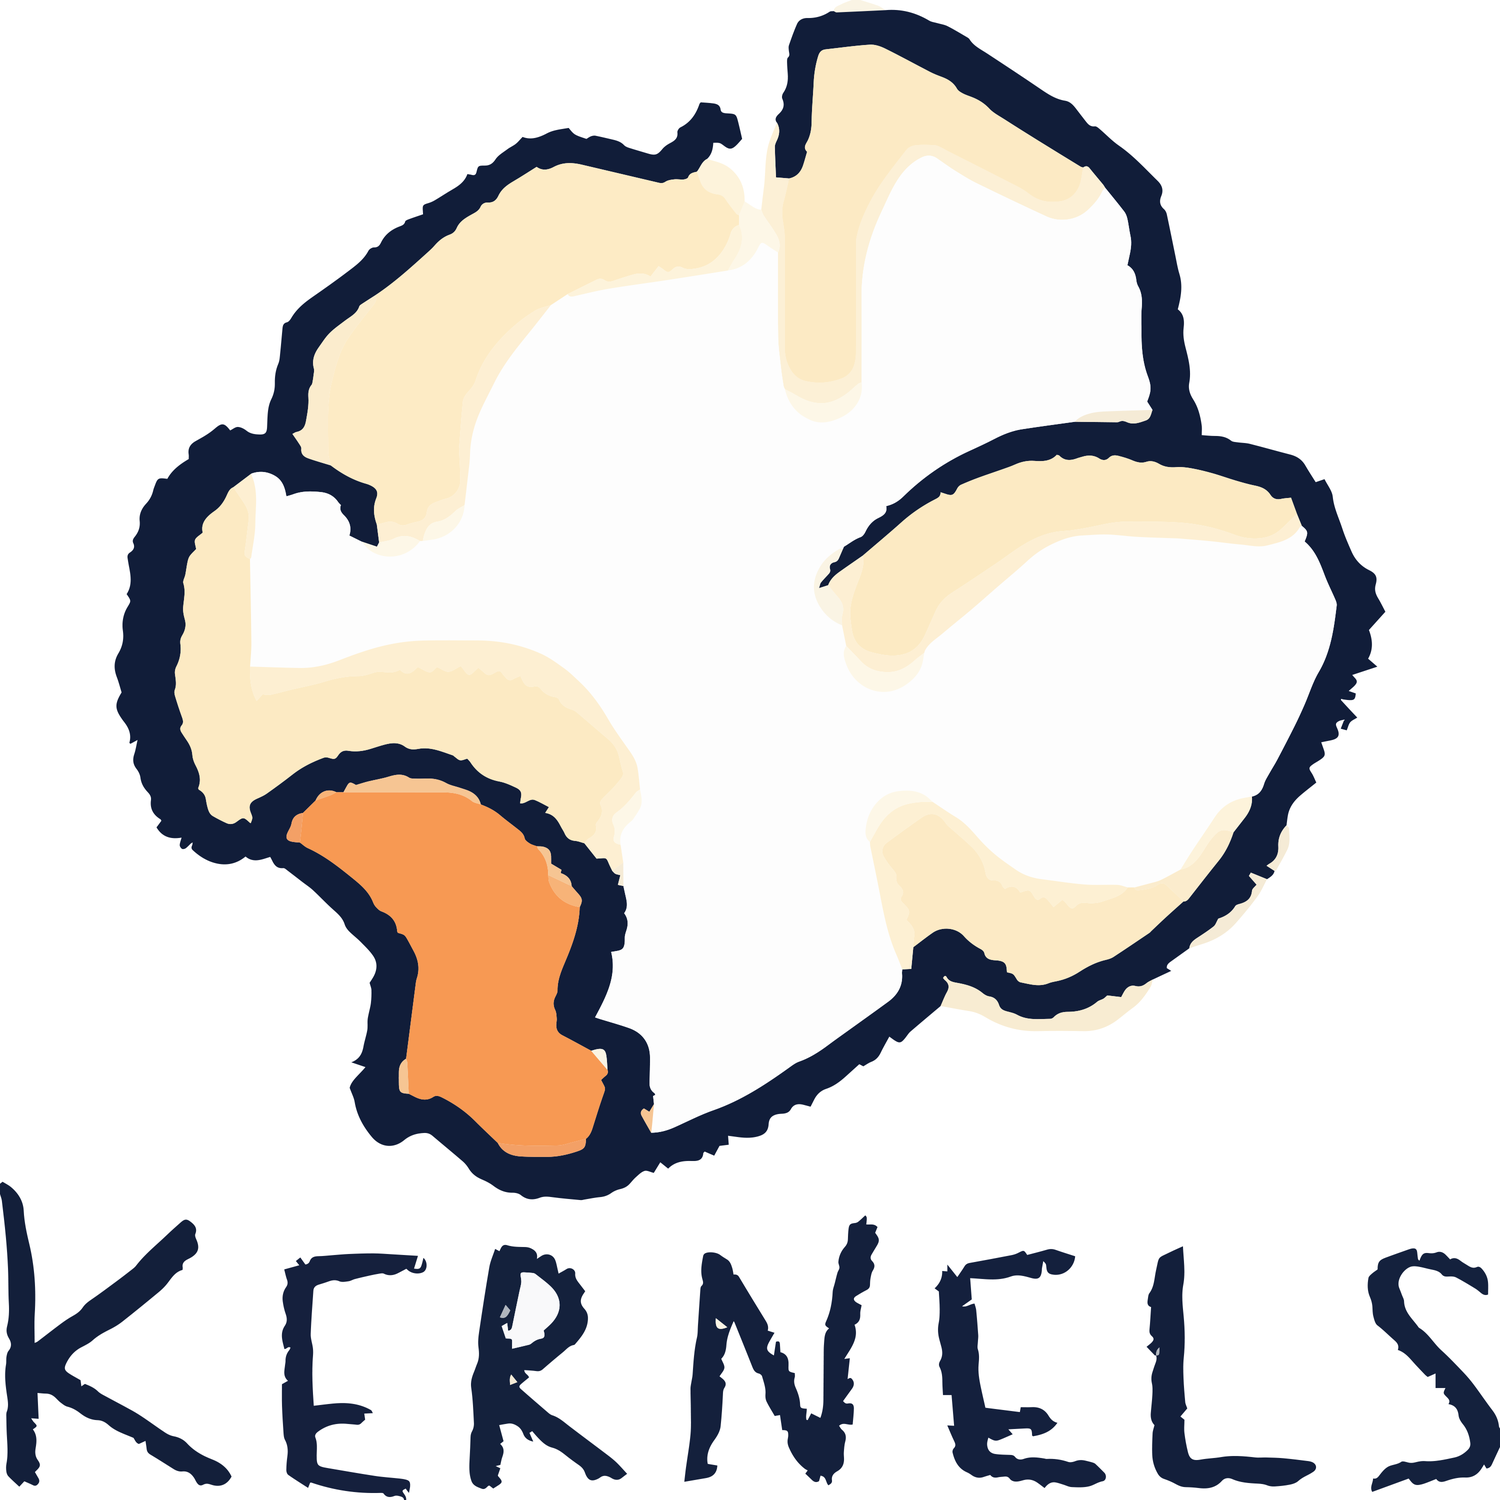 kernels